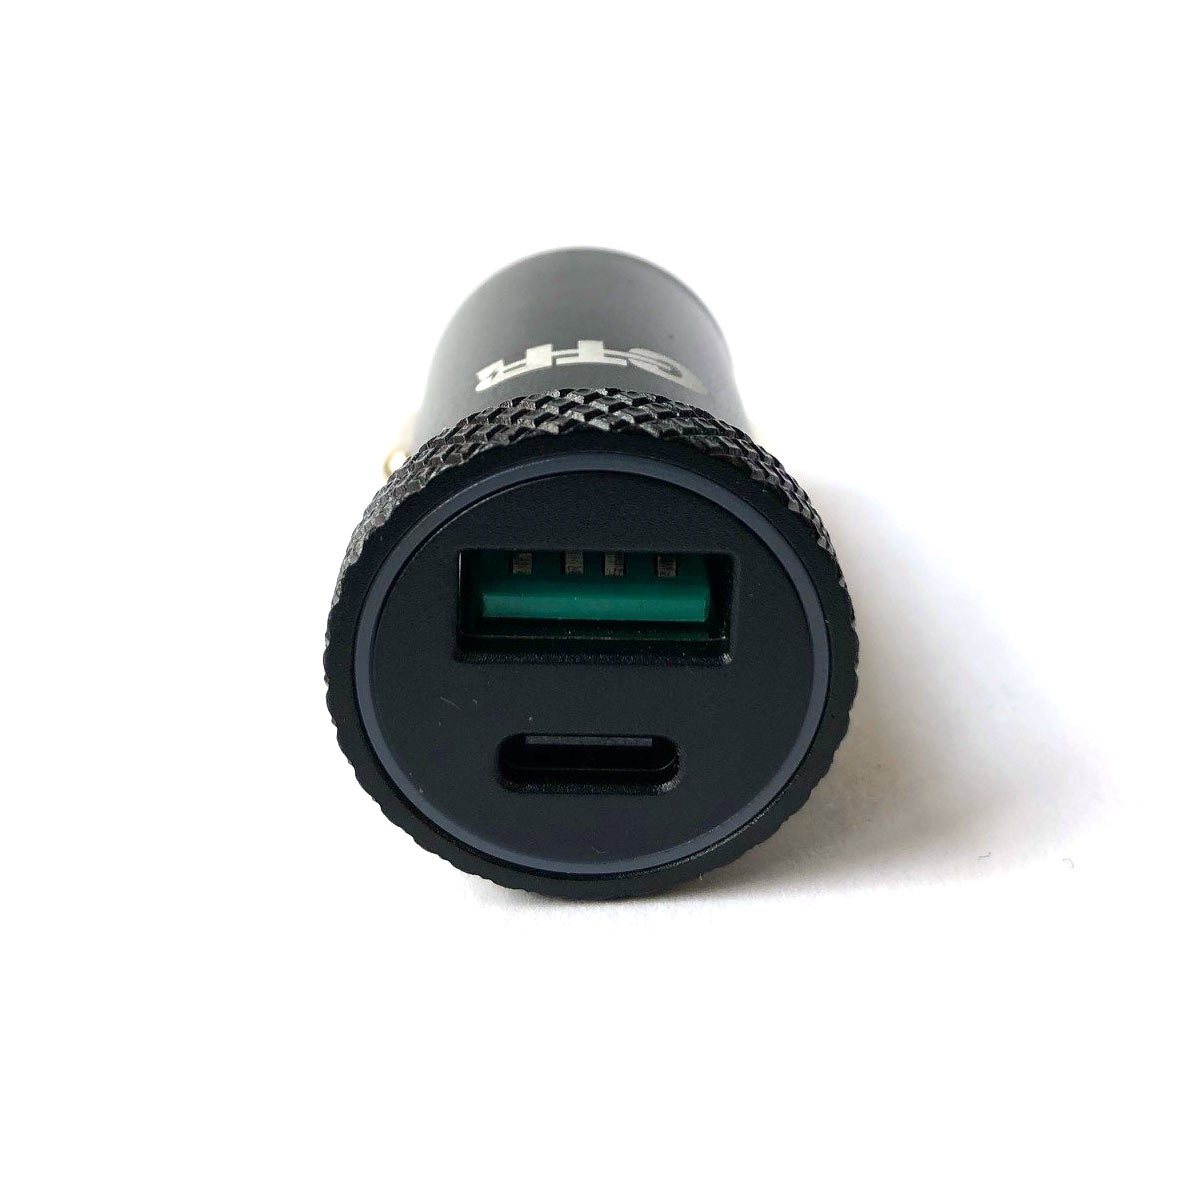 Adaptateur Allume Cigare / USB - Chargeur Cigarette Electronique - Ô Mon  VapO